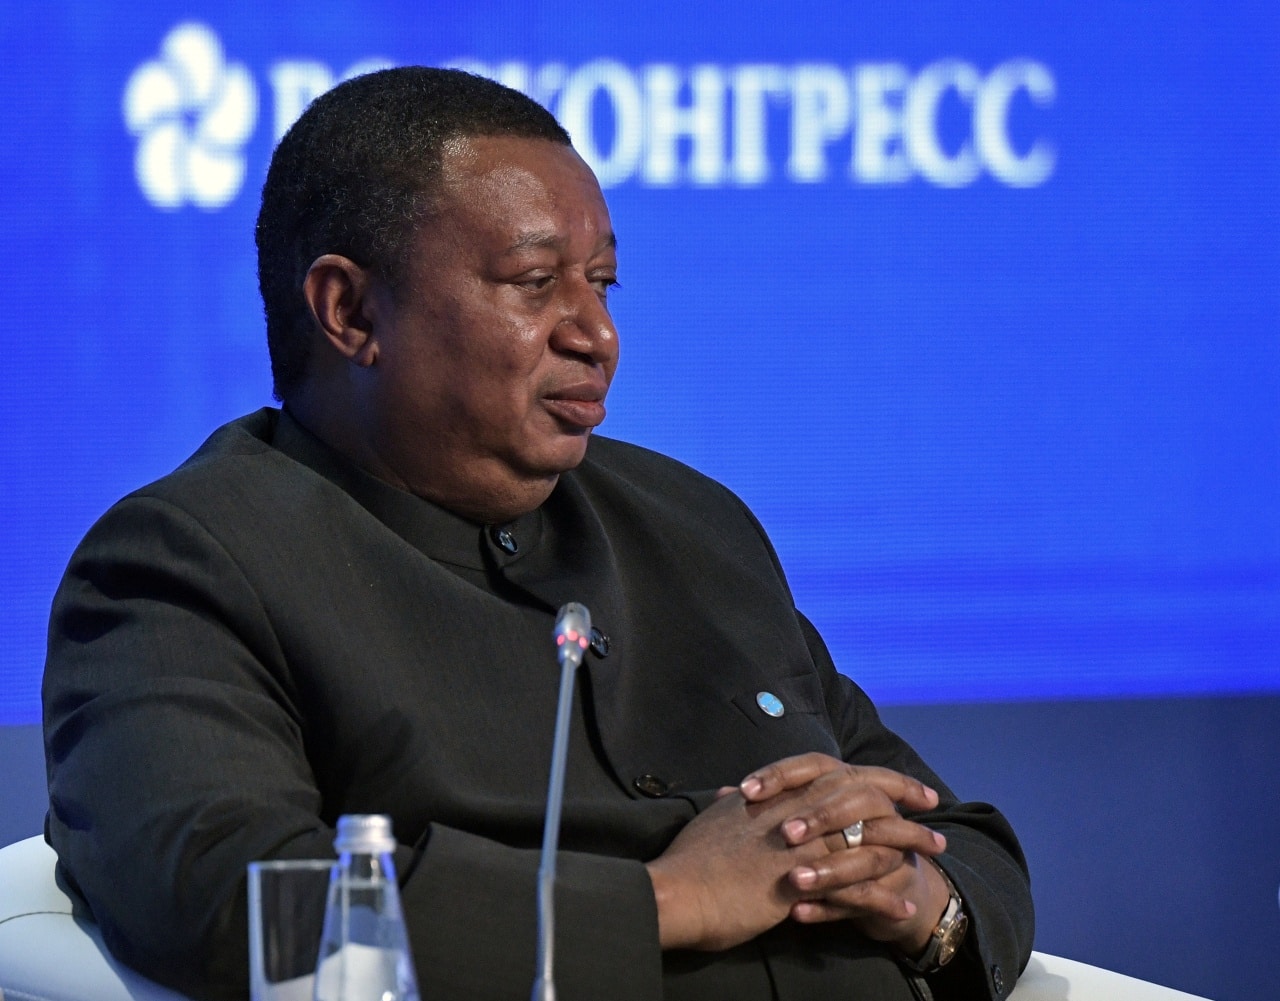 Fallece el secretario general de la OPEP, el nigeriano Mohamed Barkindo